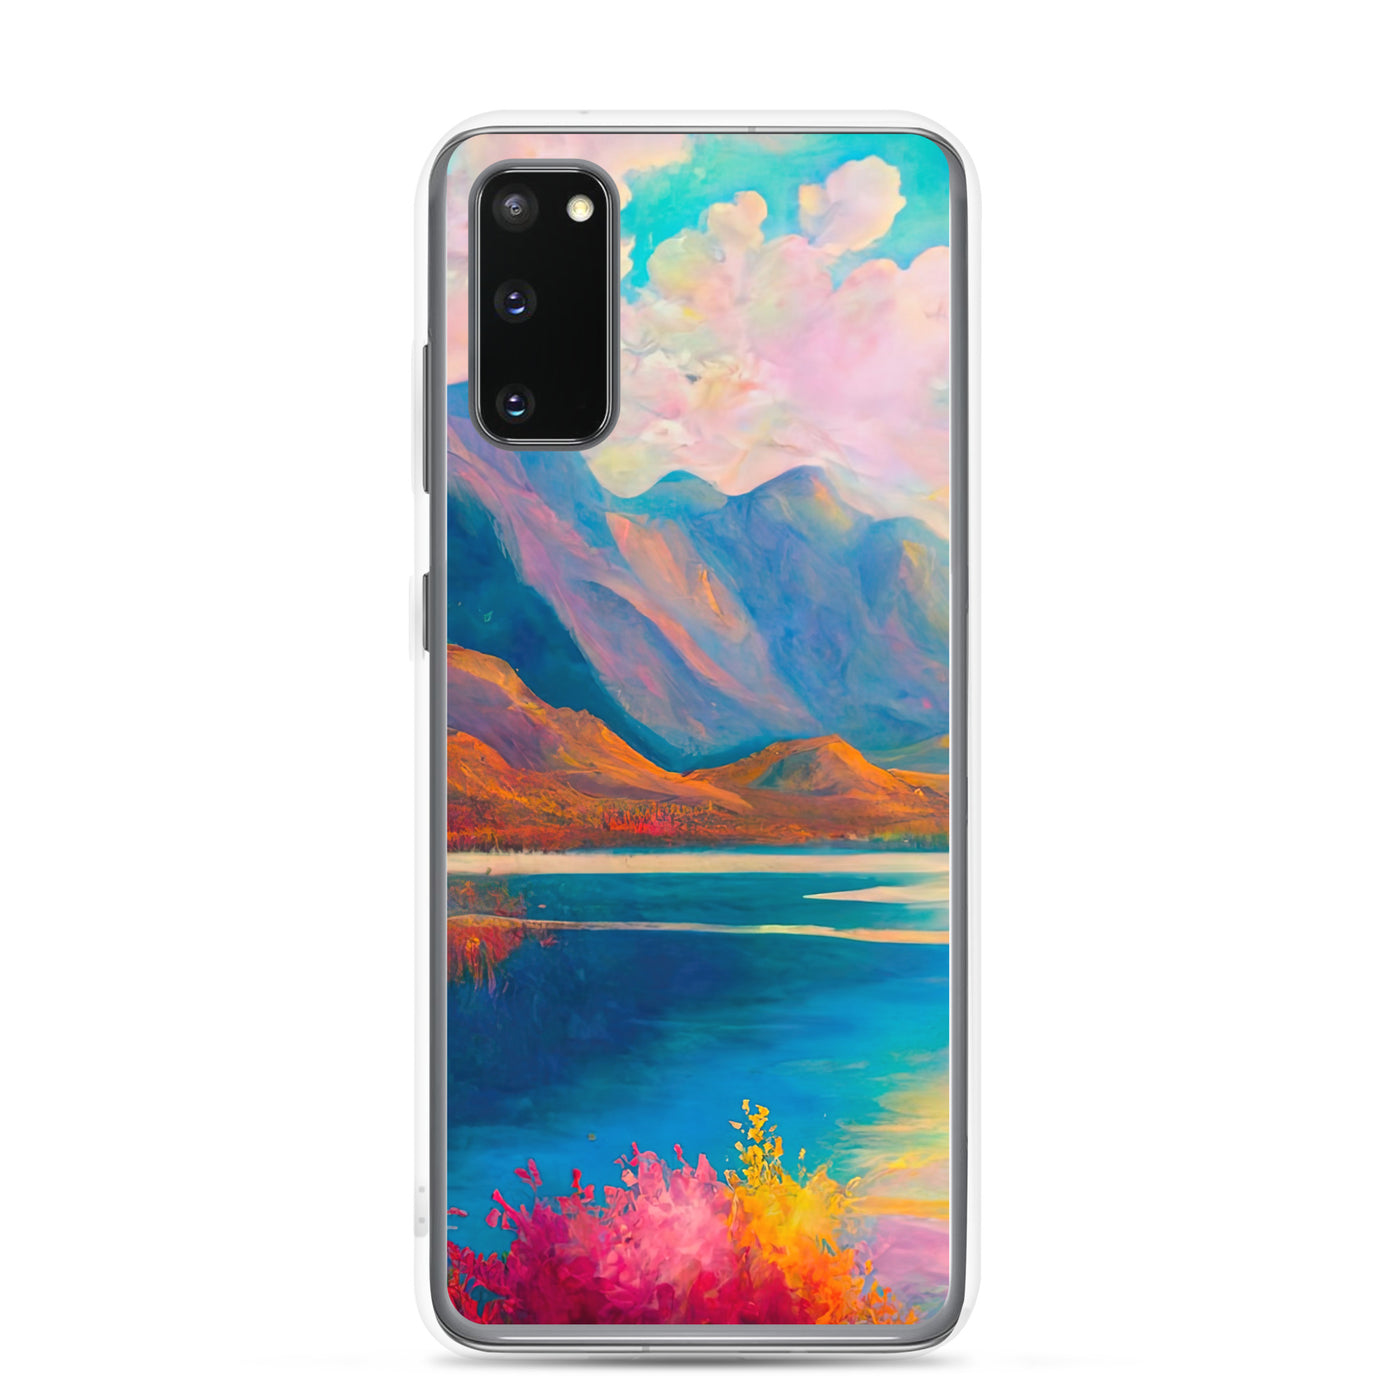 Berglandschaft und Bergsee - Farbige Ölmalerei - Samsung Schutzhülle (durchsichtig) berge xxx Samsung Galaxy S20